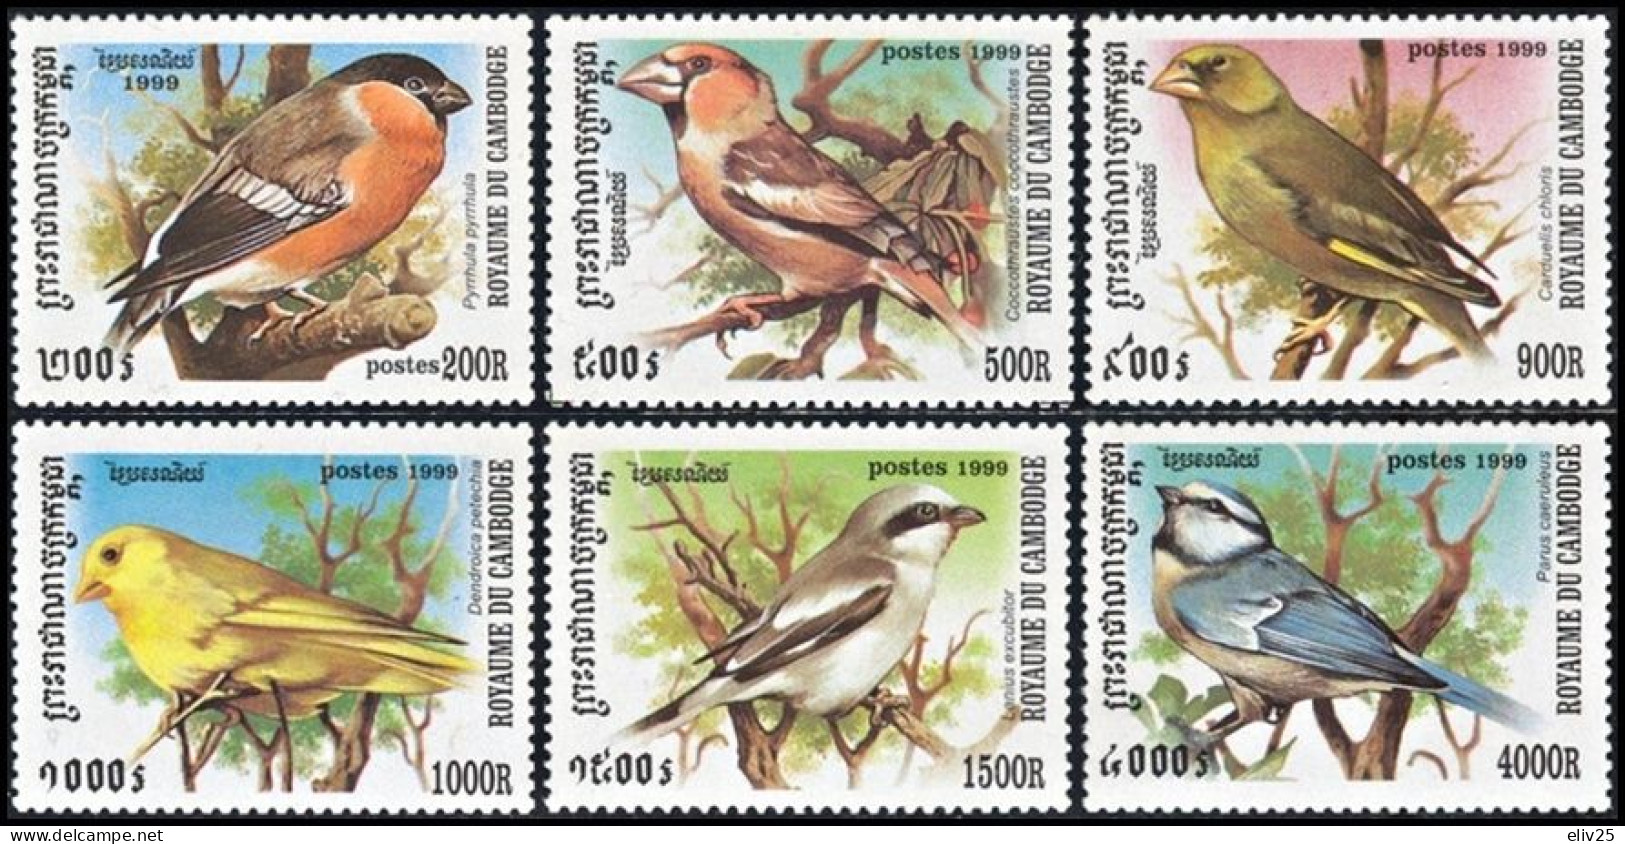 Cambodia 1999, Birds Songbirds - 6 V. MNH - Pájaros Cantores (Passeri)